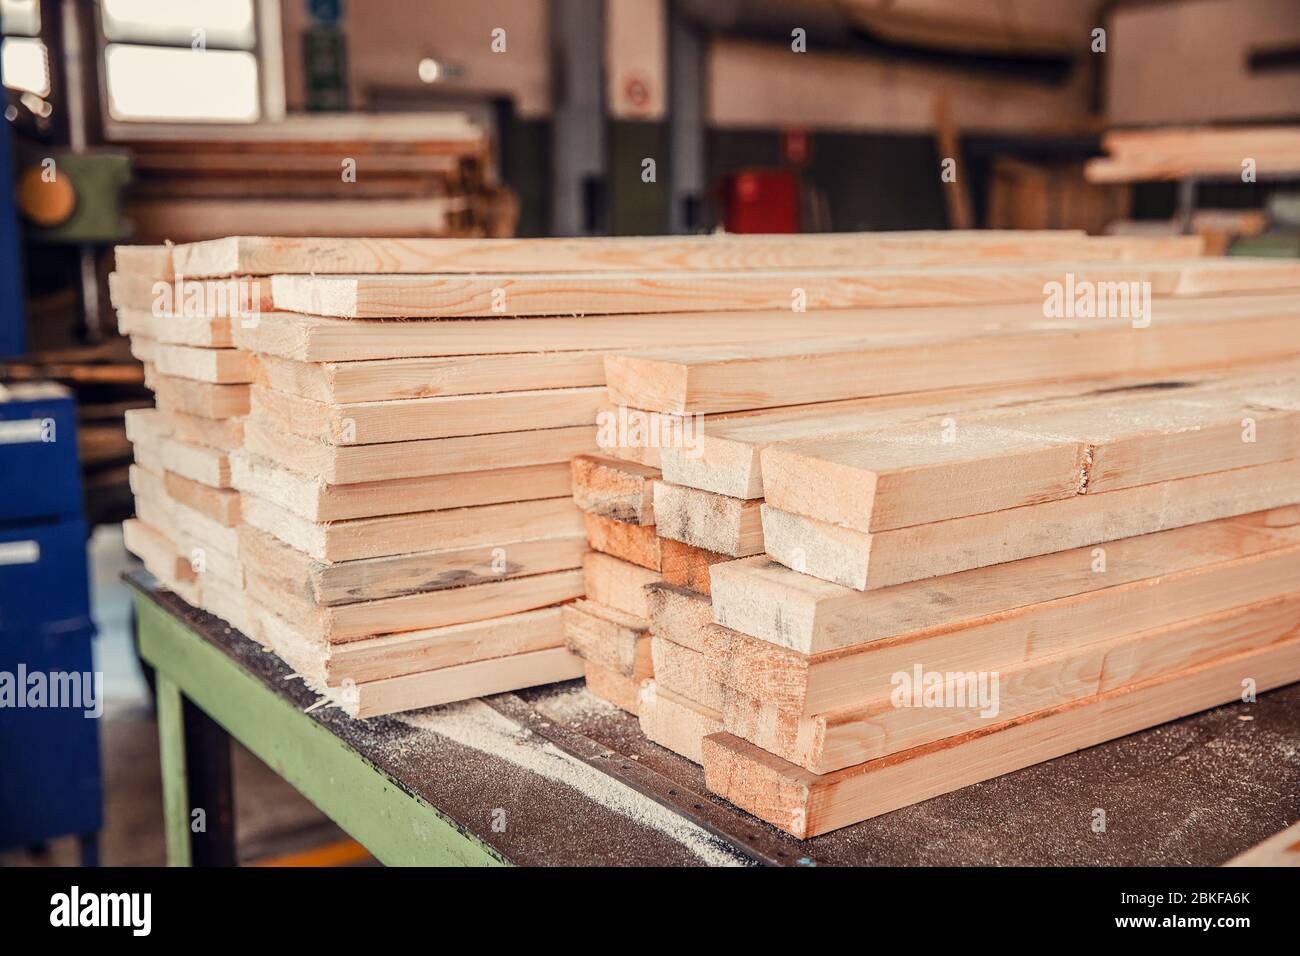 proceso de aserrado de una tabla de madera. concepto de carpintería y  fabricación de muebles de bricolaje 14263854 Foto de stock en Vecteezy